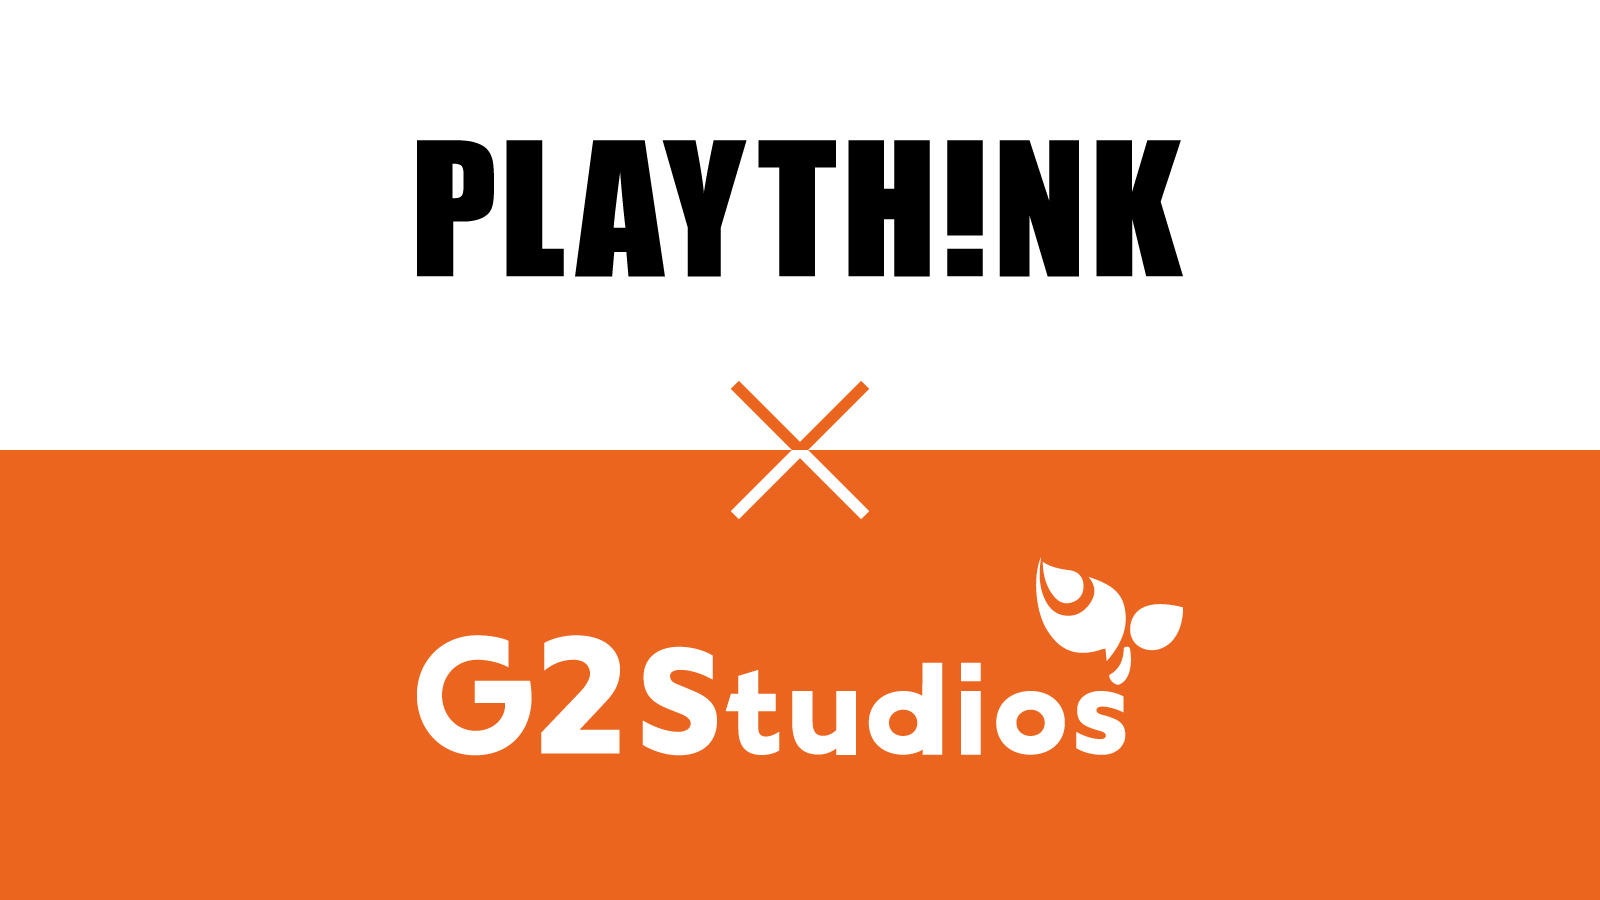 G2 Studios、株式会社プレイシンクと事業提携